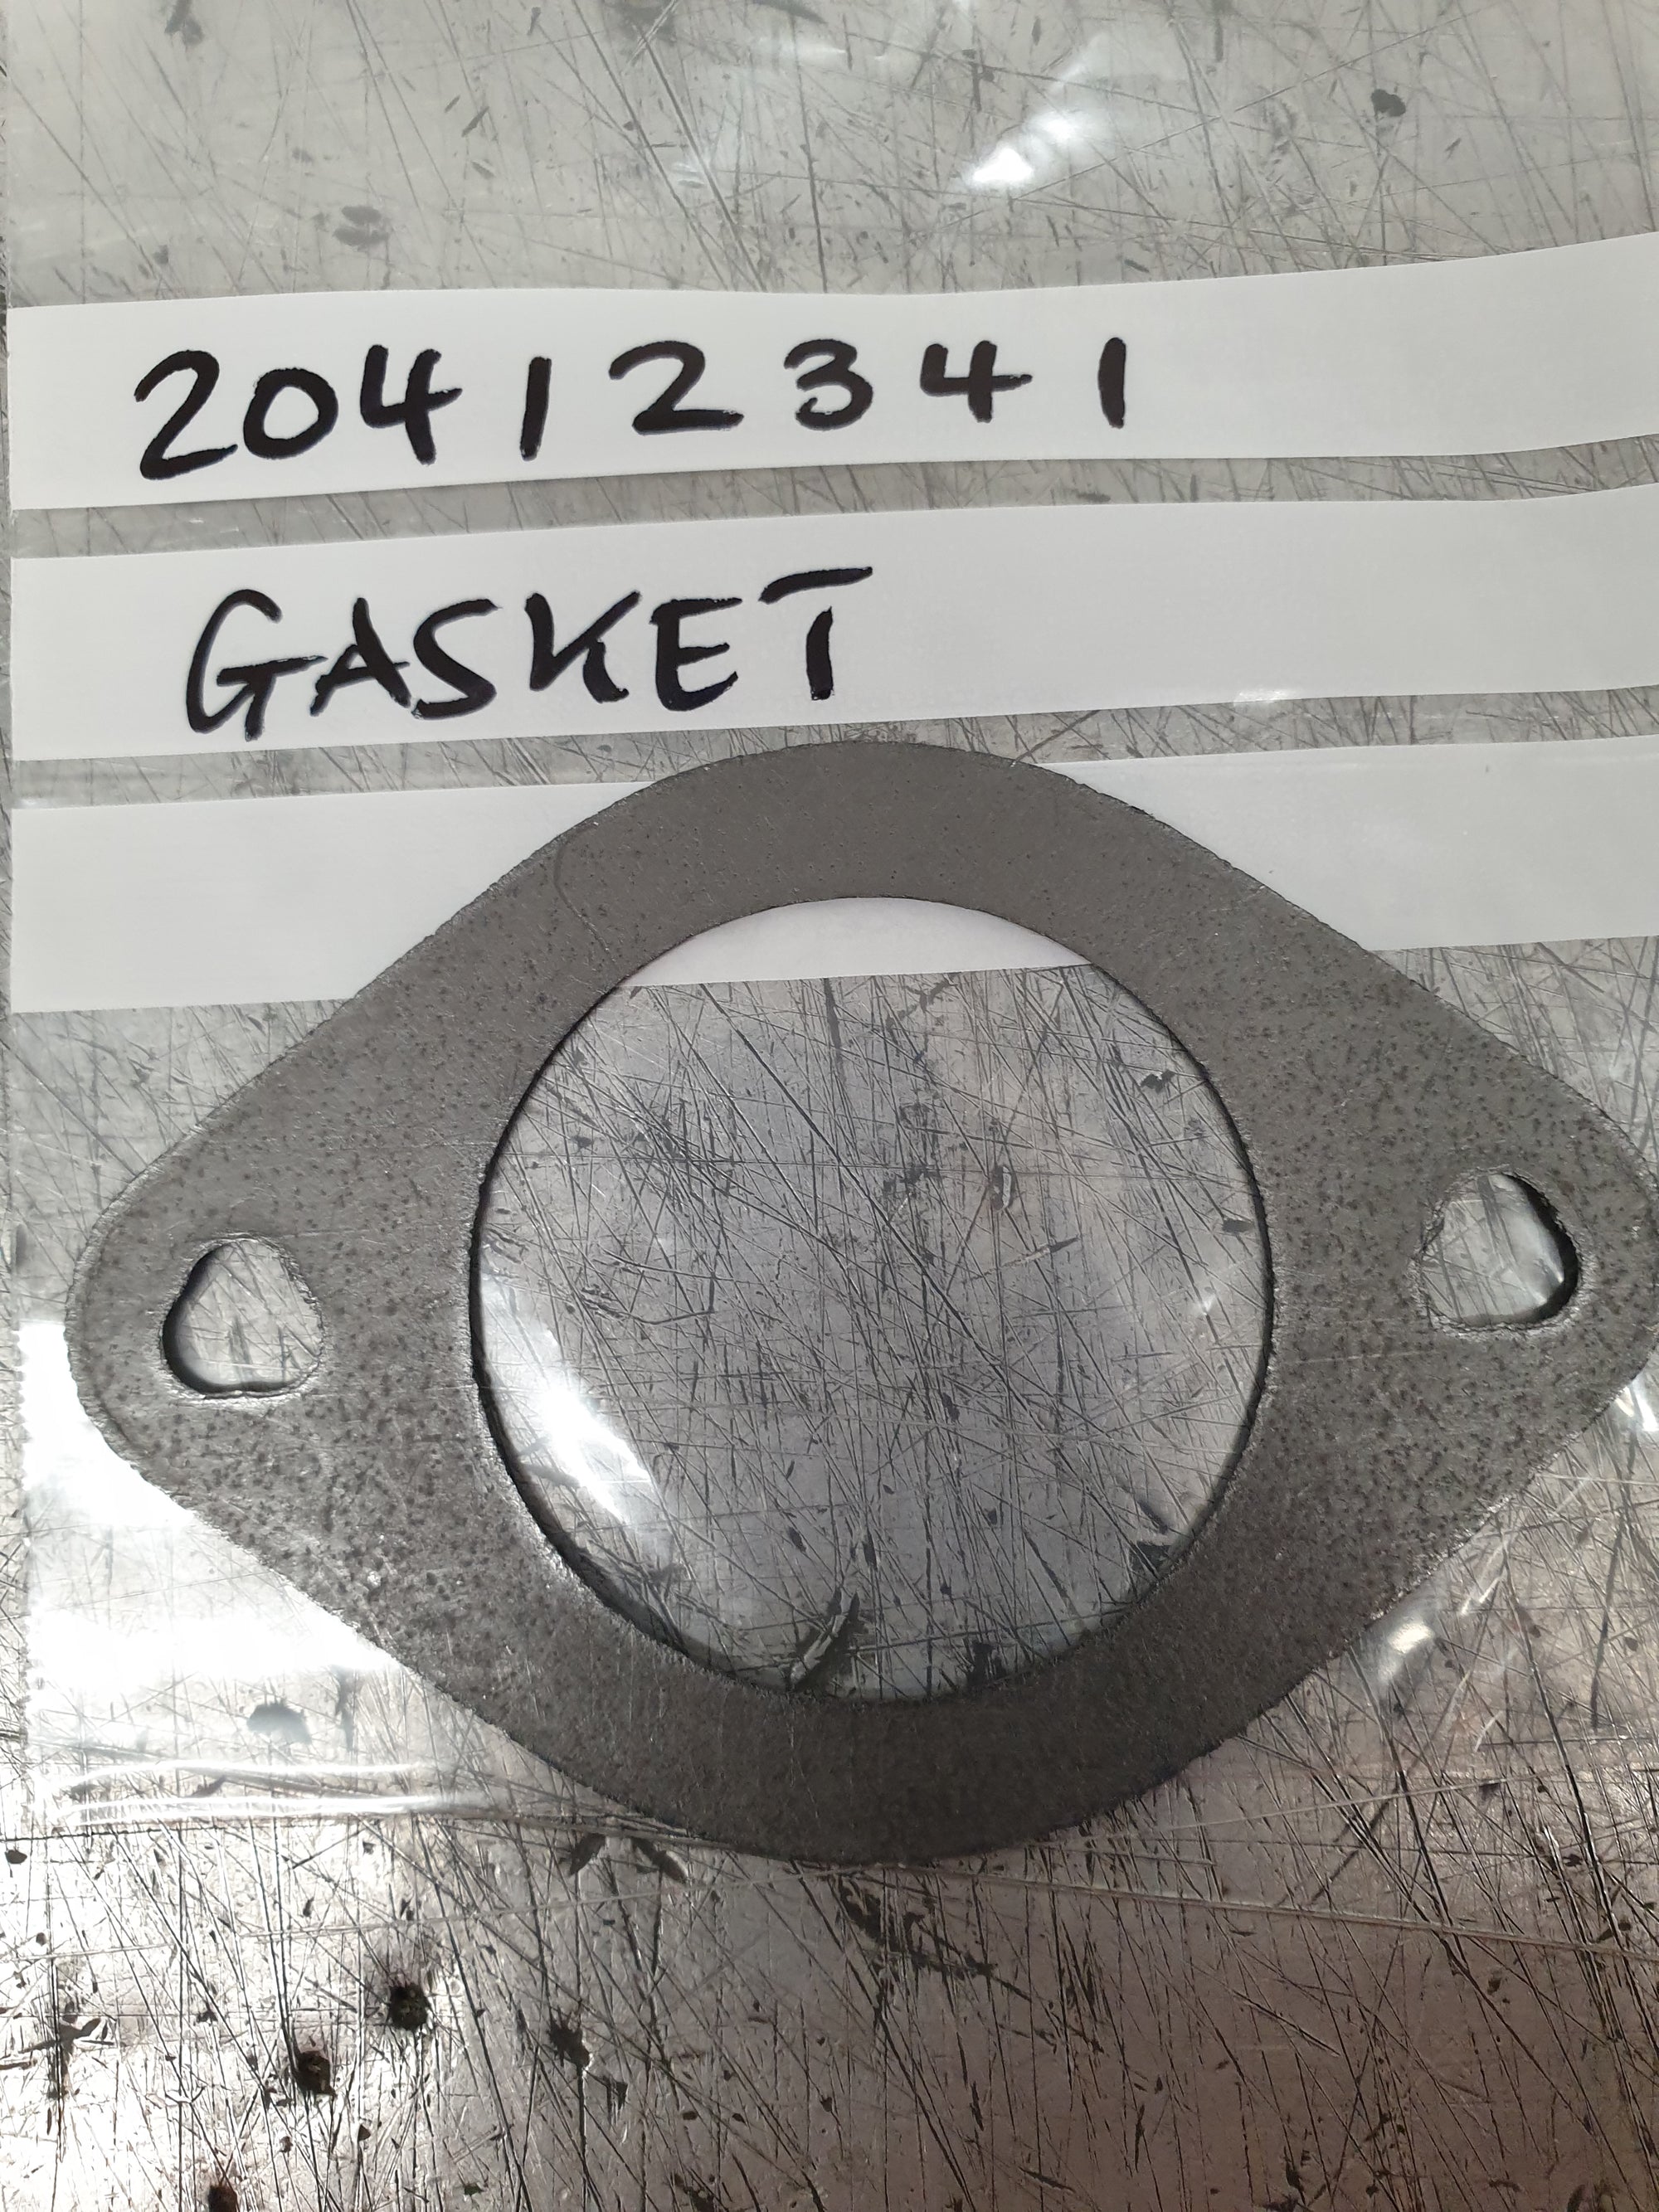 GASKET - 20412341